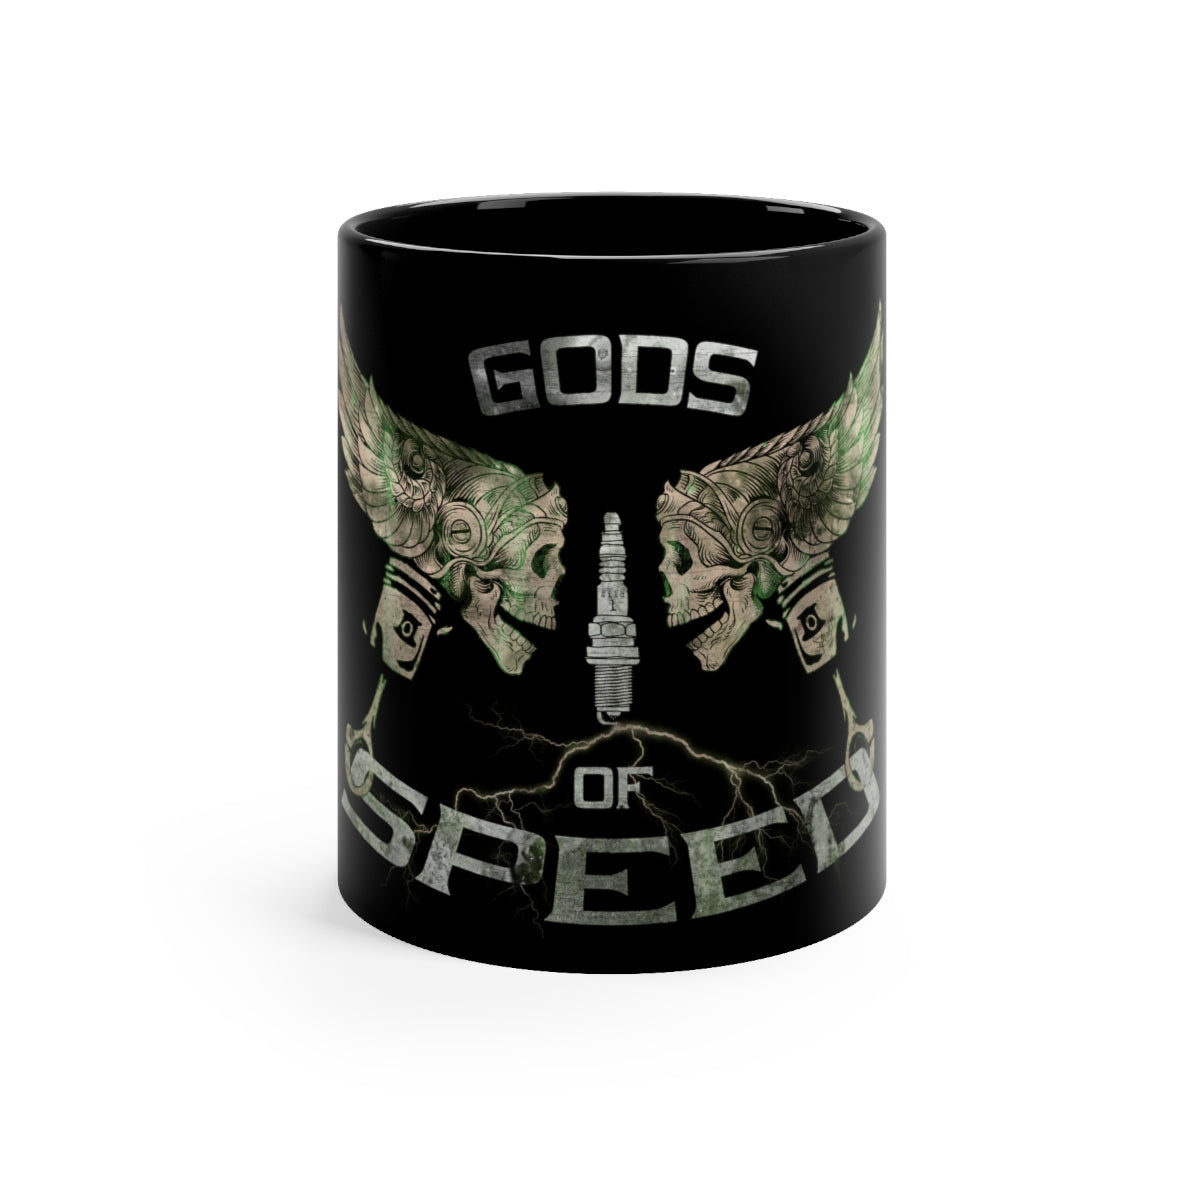 Gods of Speed - Black mug 11oz